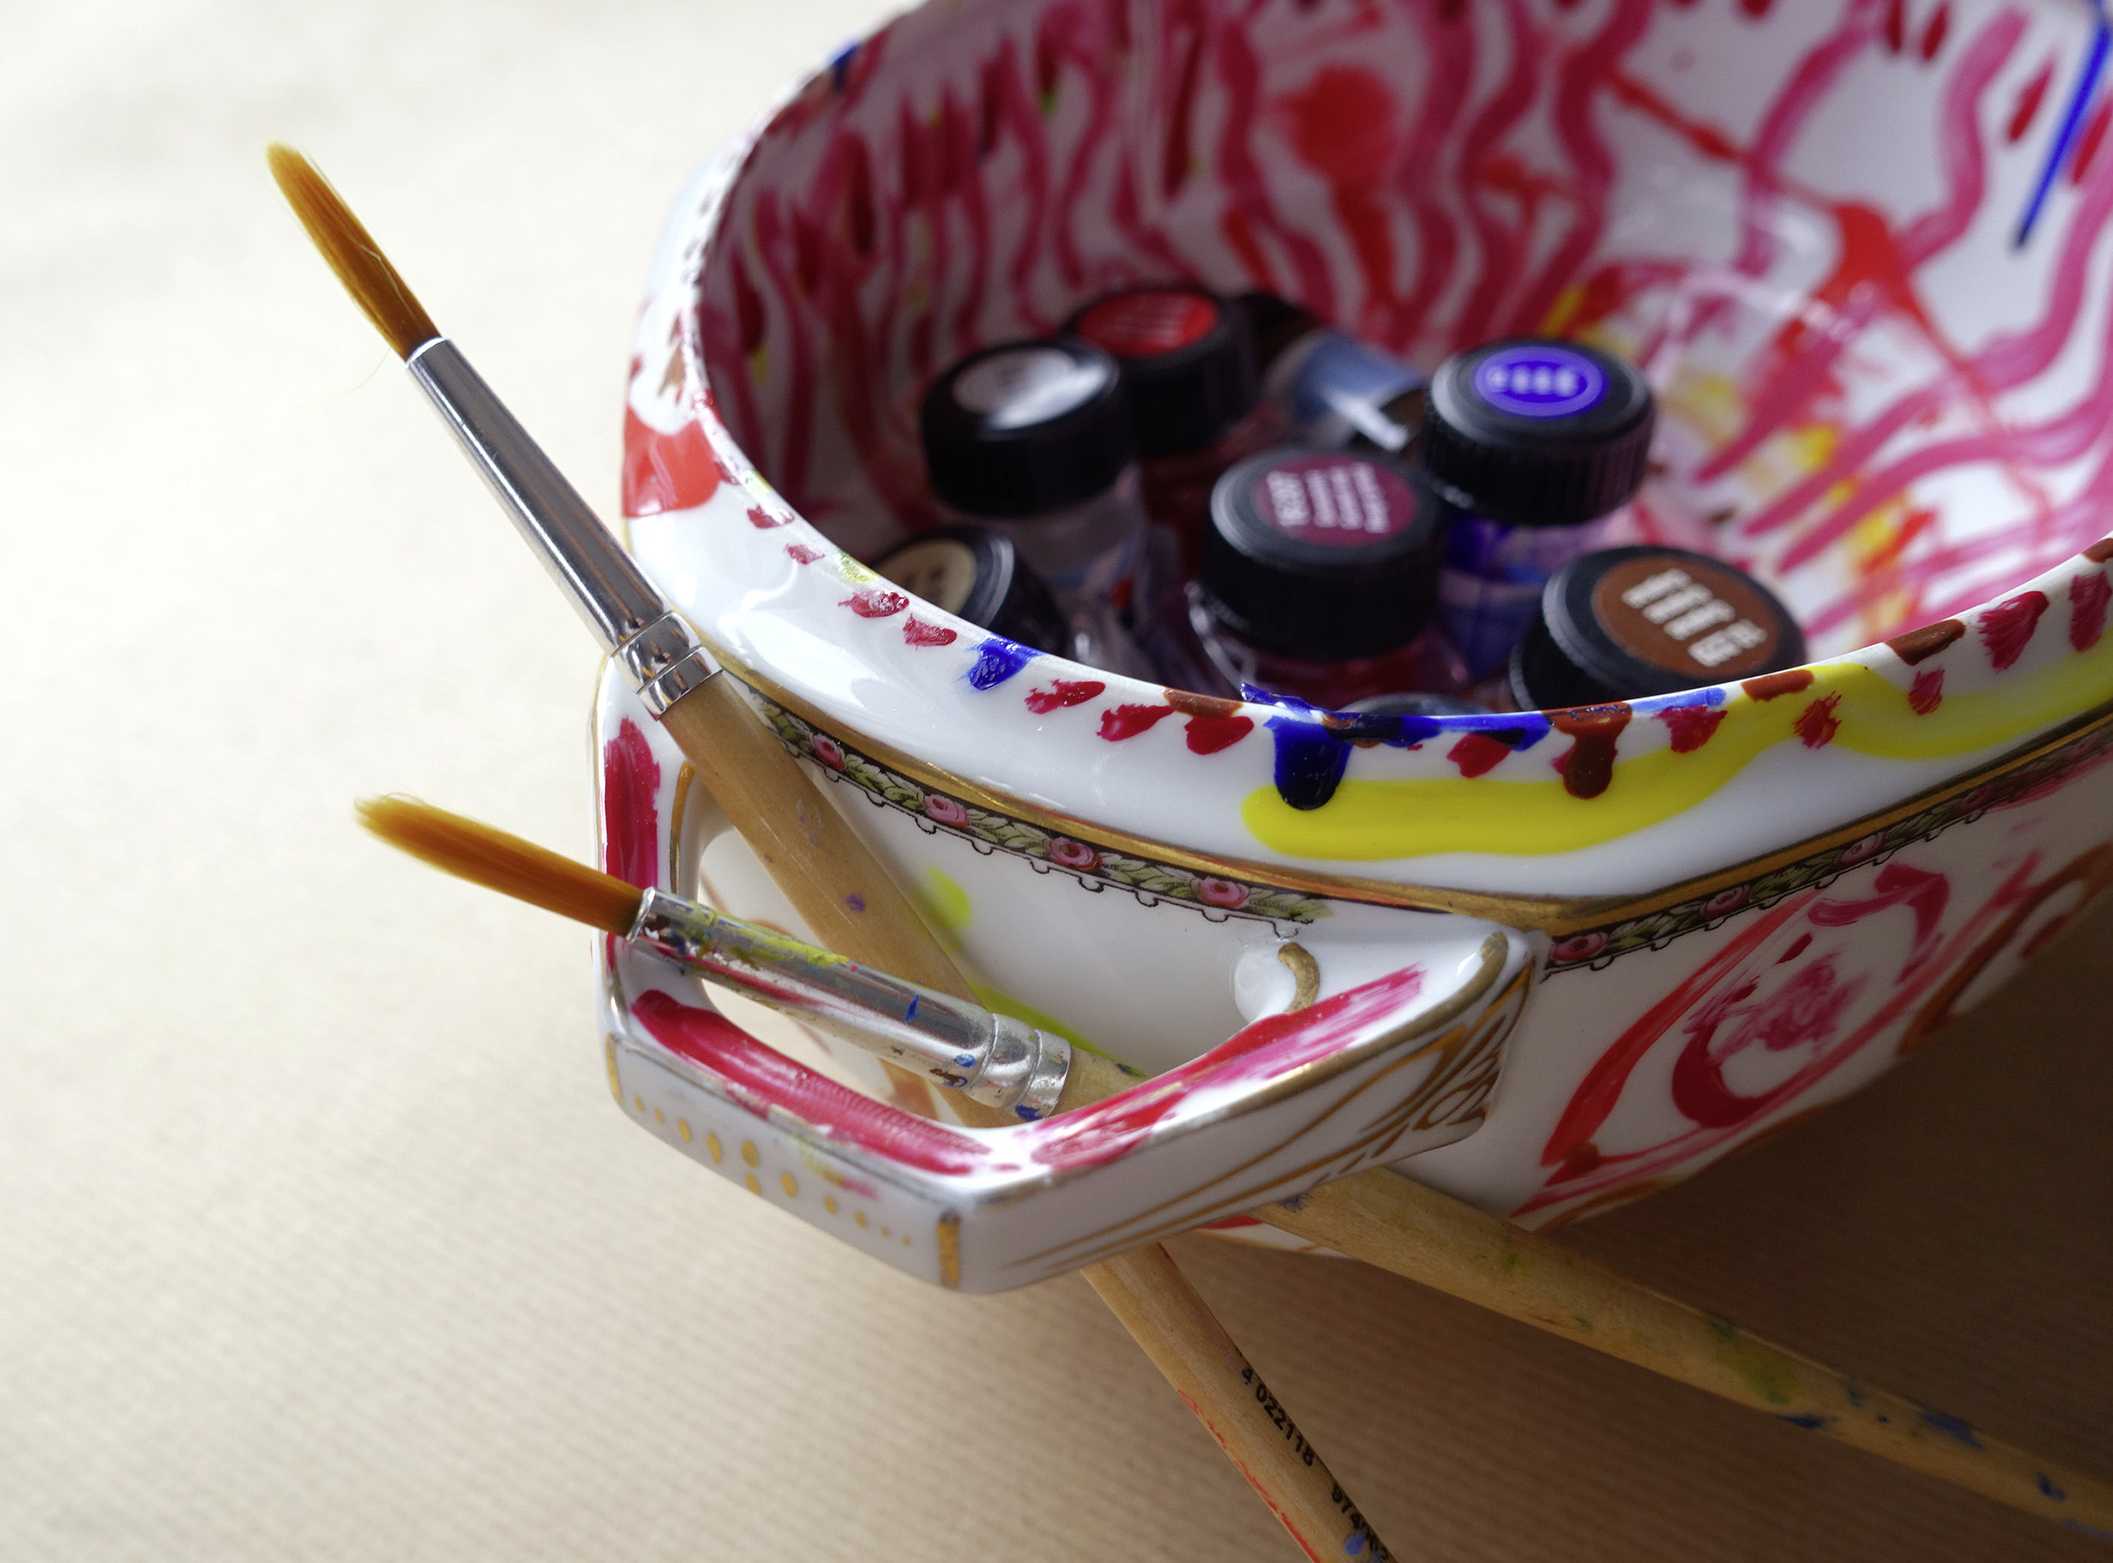 Bemalte Porzellanschüssel mit Pinseln und Farben | Fotoaufnahme von Pirko Schröder